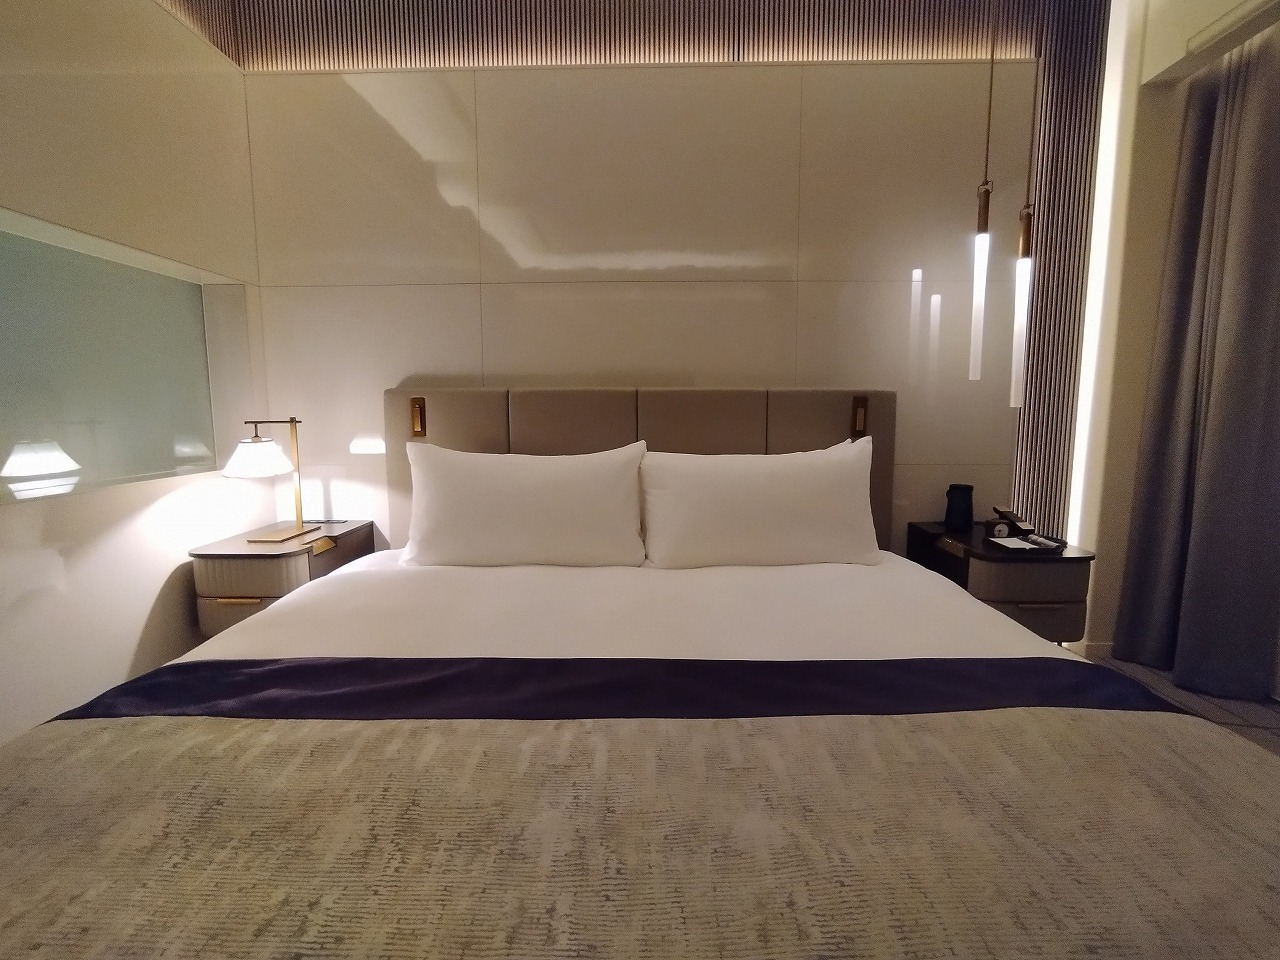 ザ・ホテル青龍 京都清水客室10